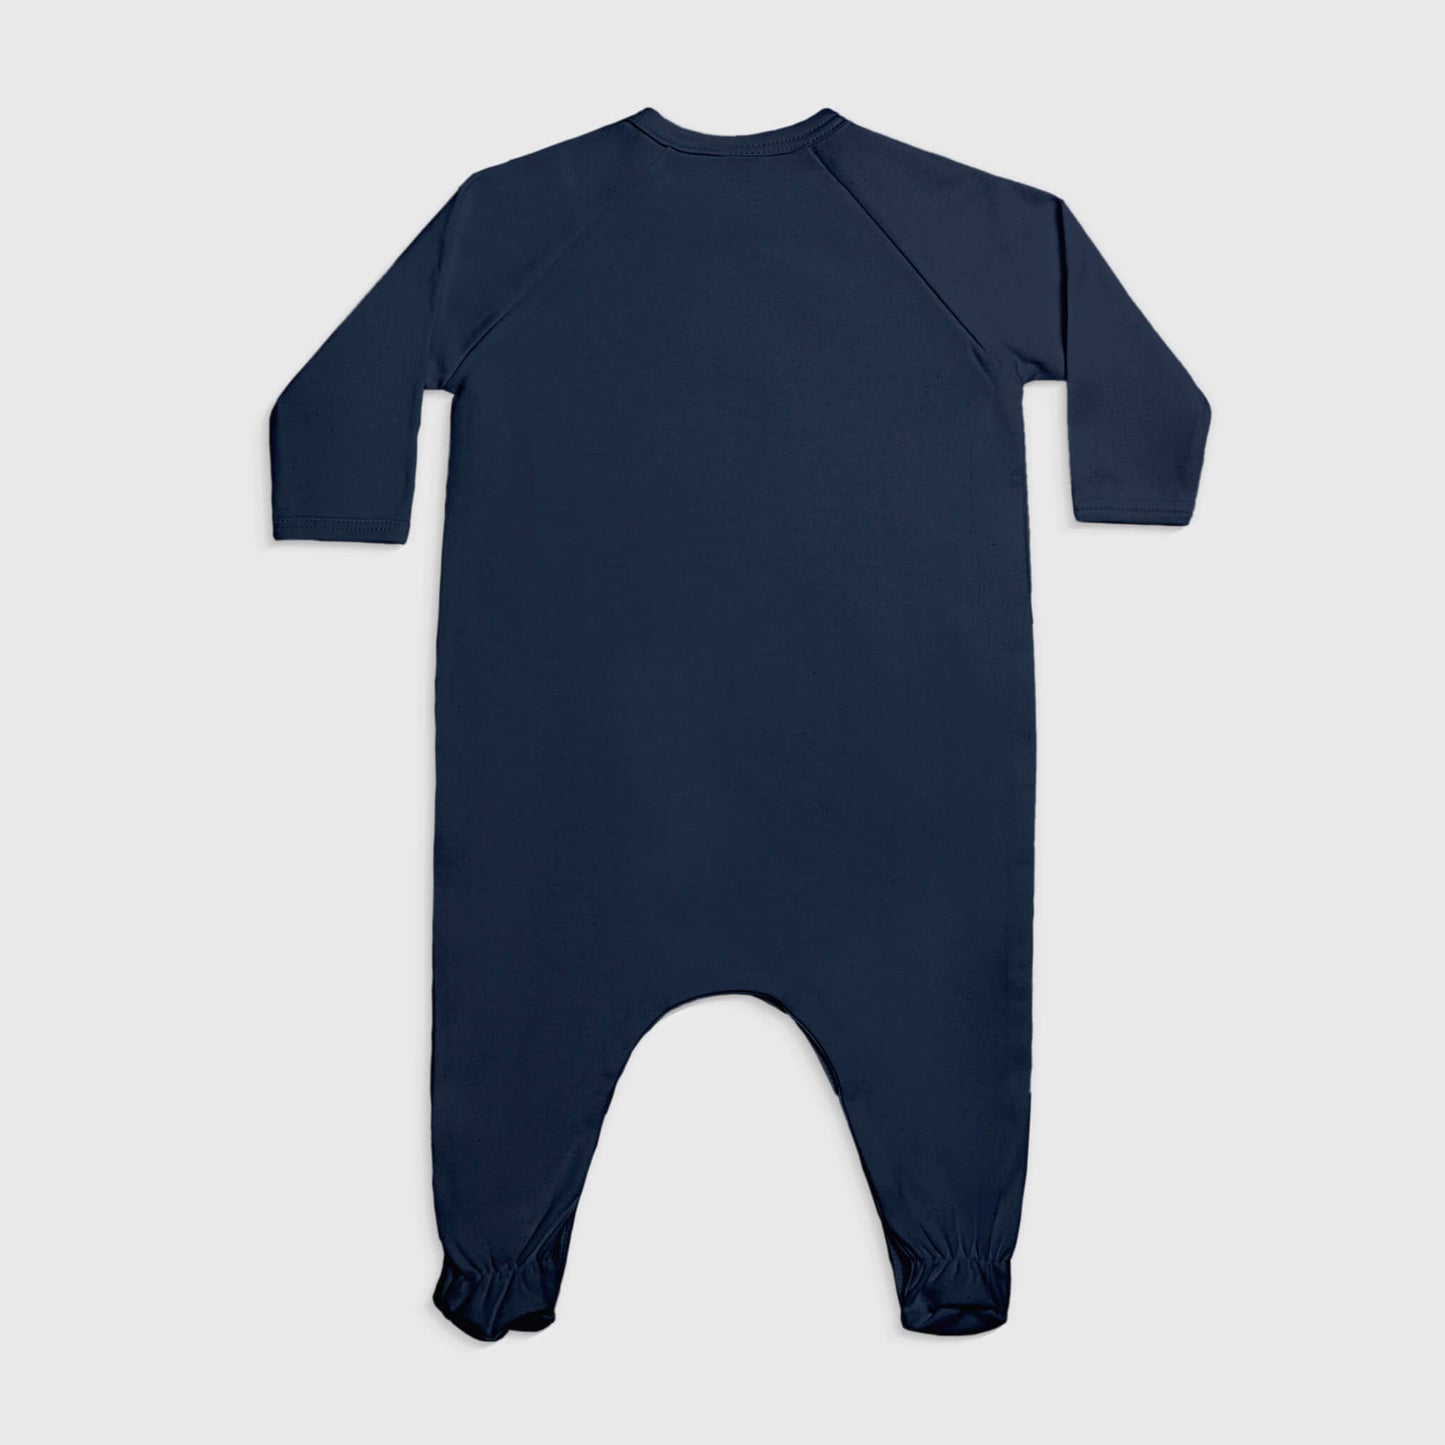 babys comfortable fit footie pajamas color navy blue